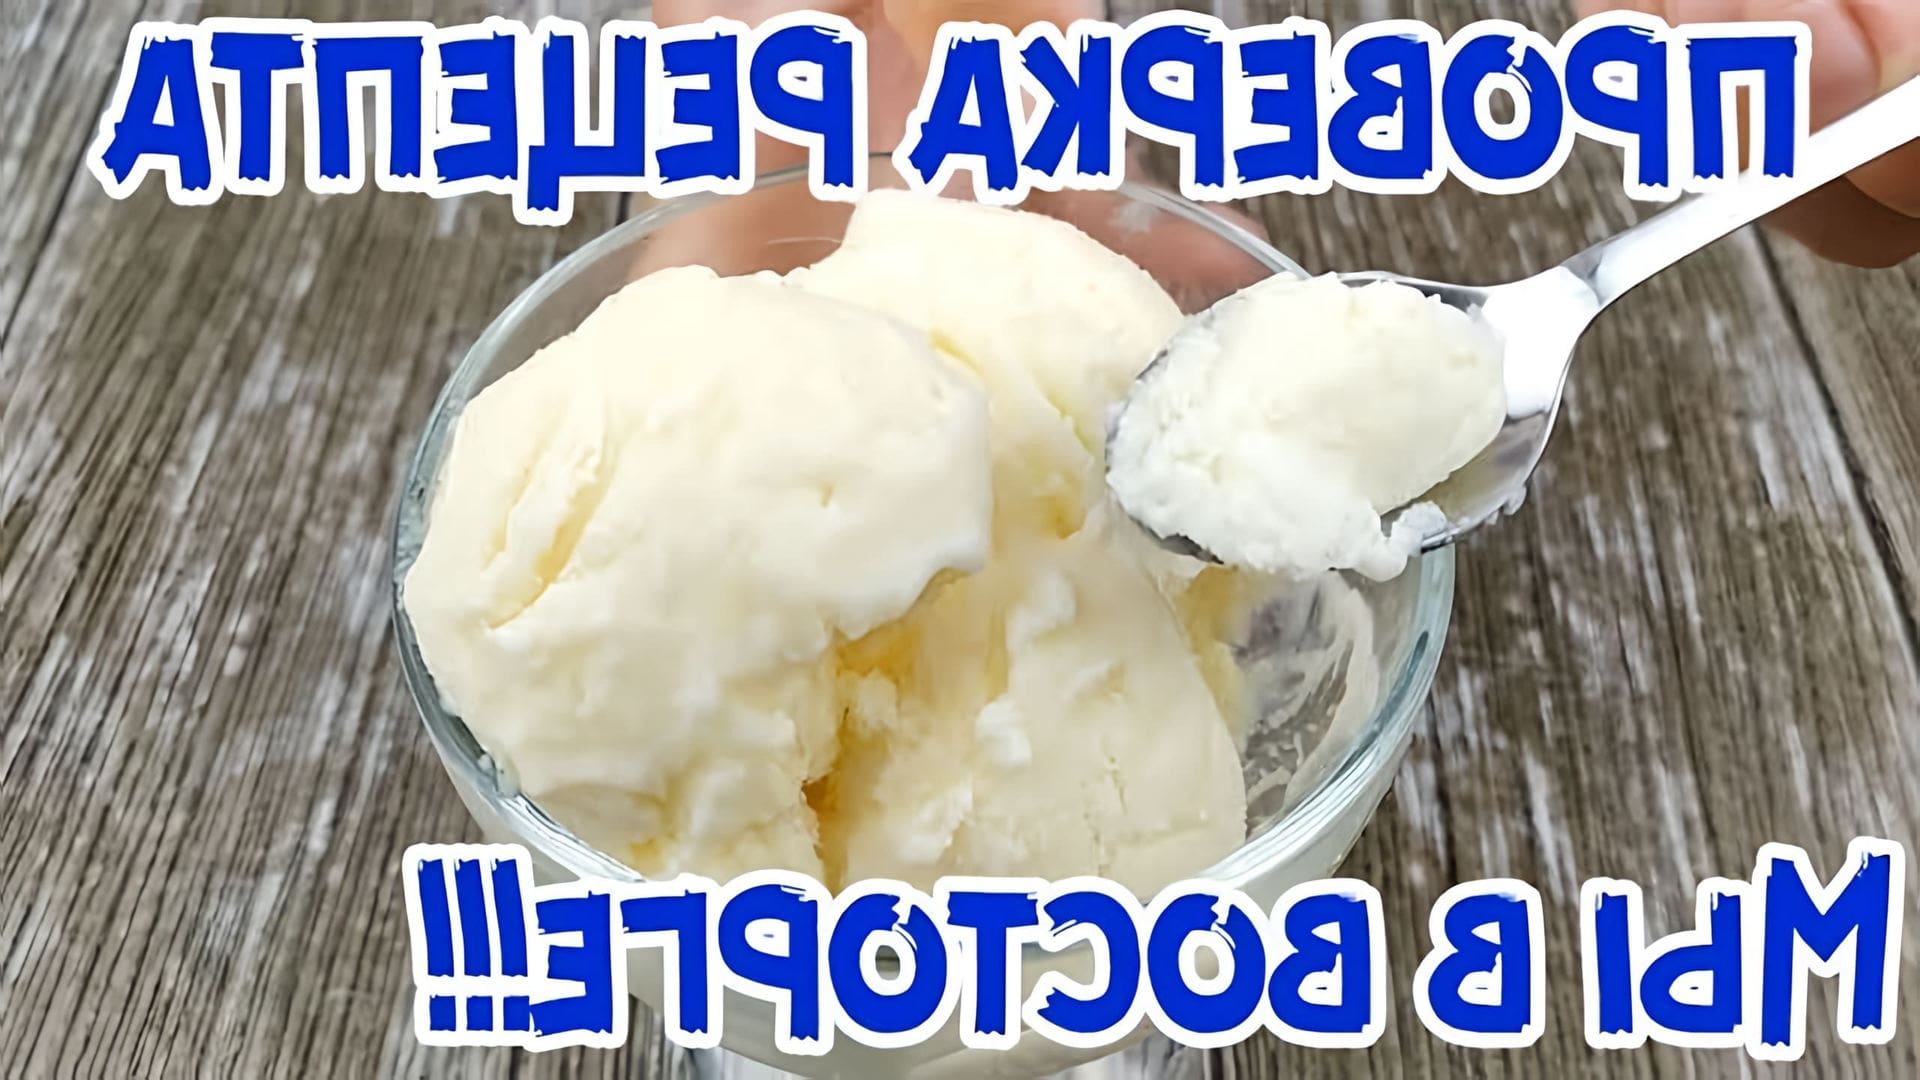 В этом видео демонстрируется рецепт приготовления мороженого за 5 копеек